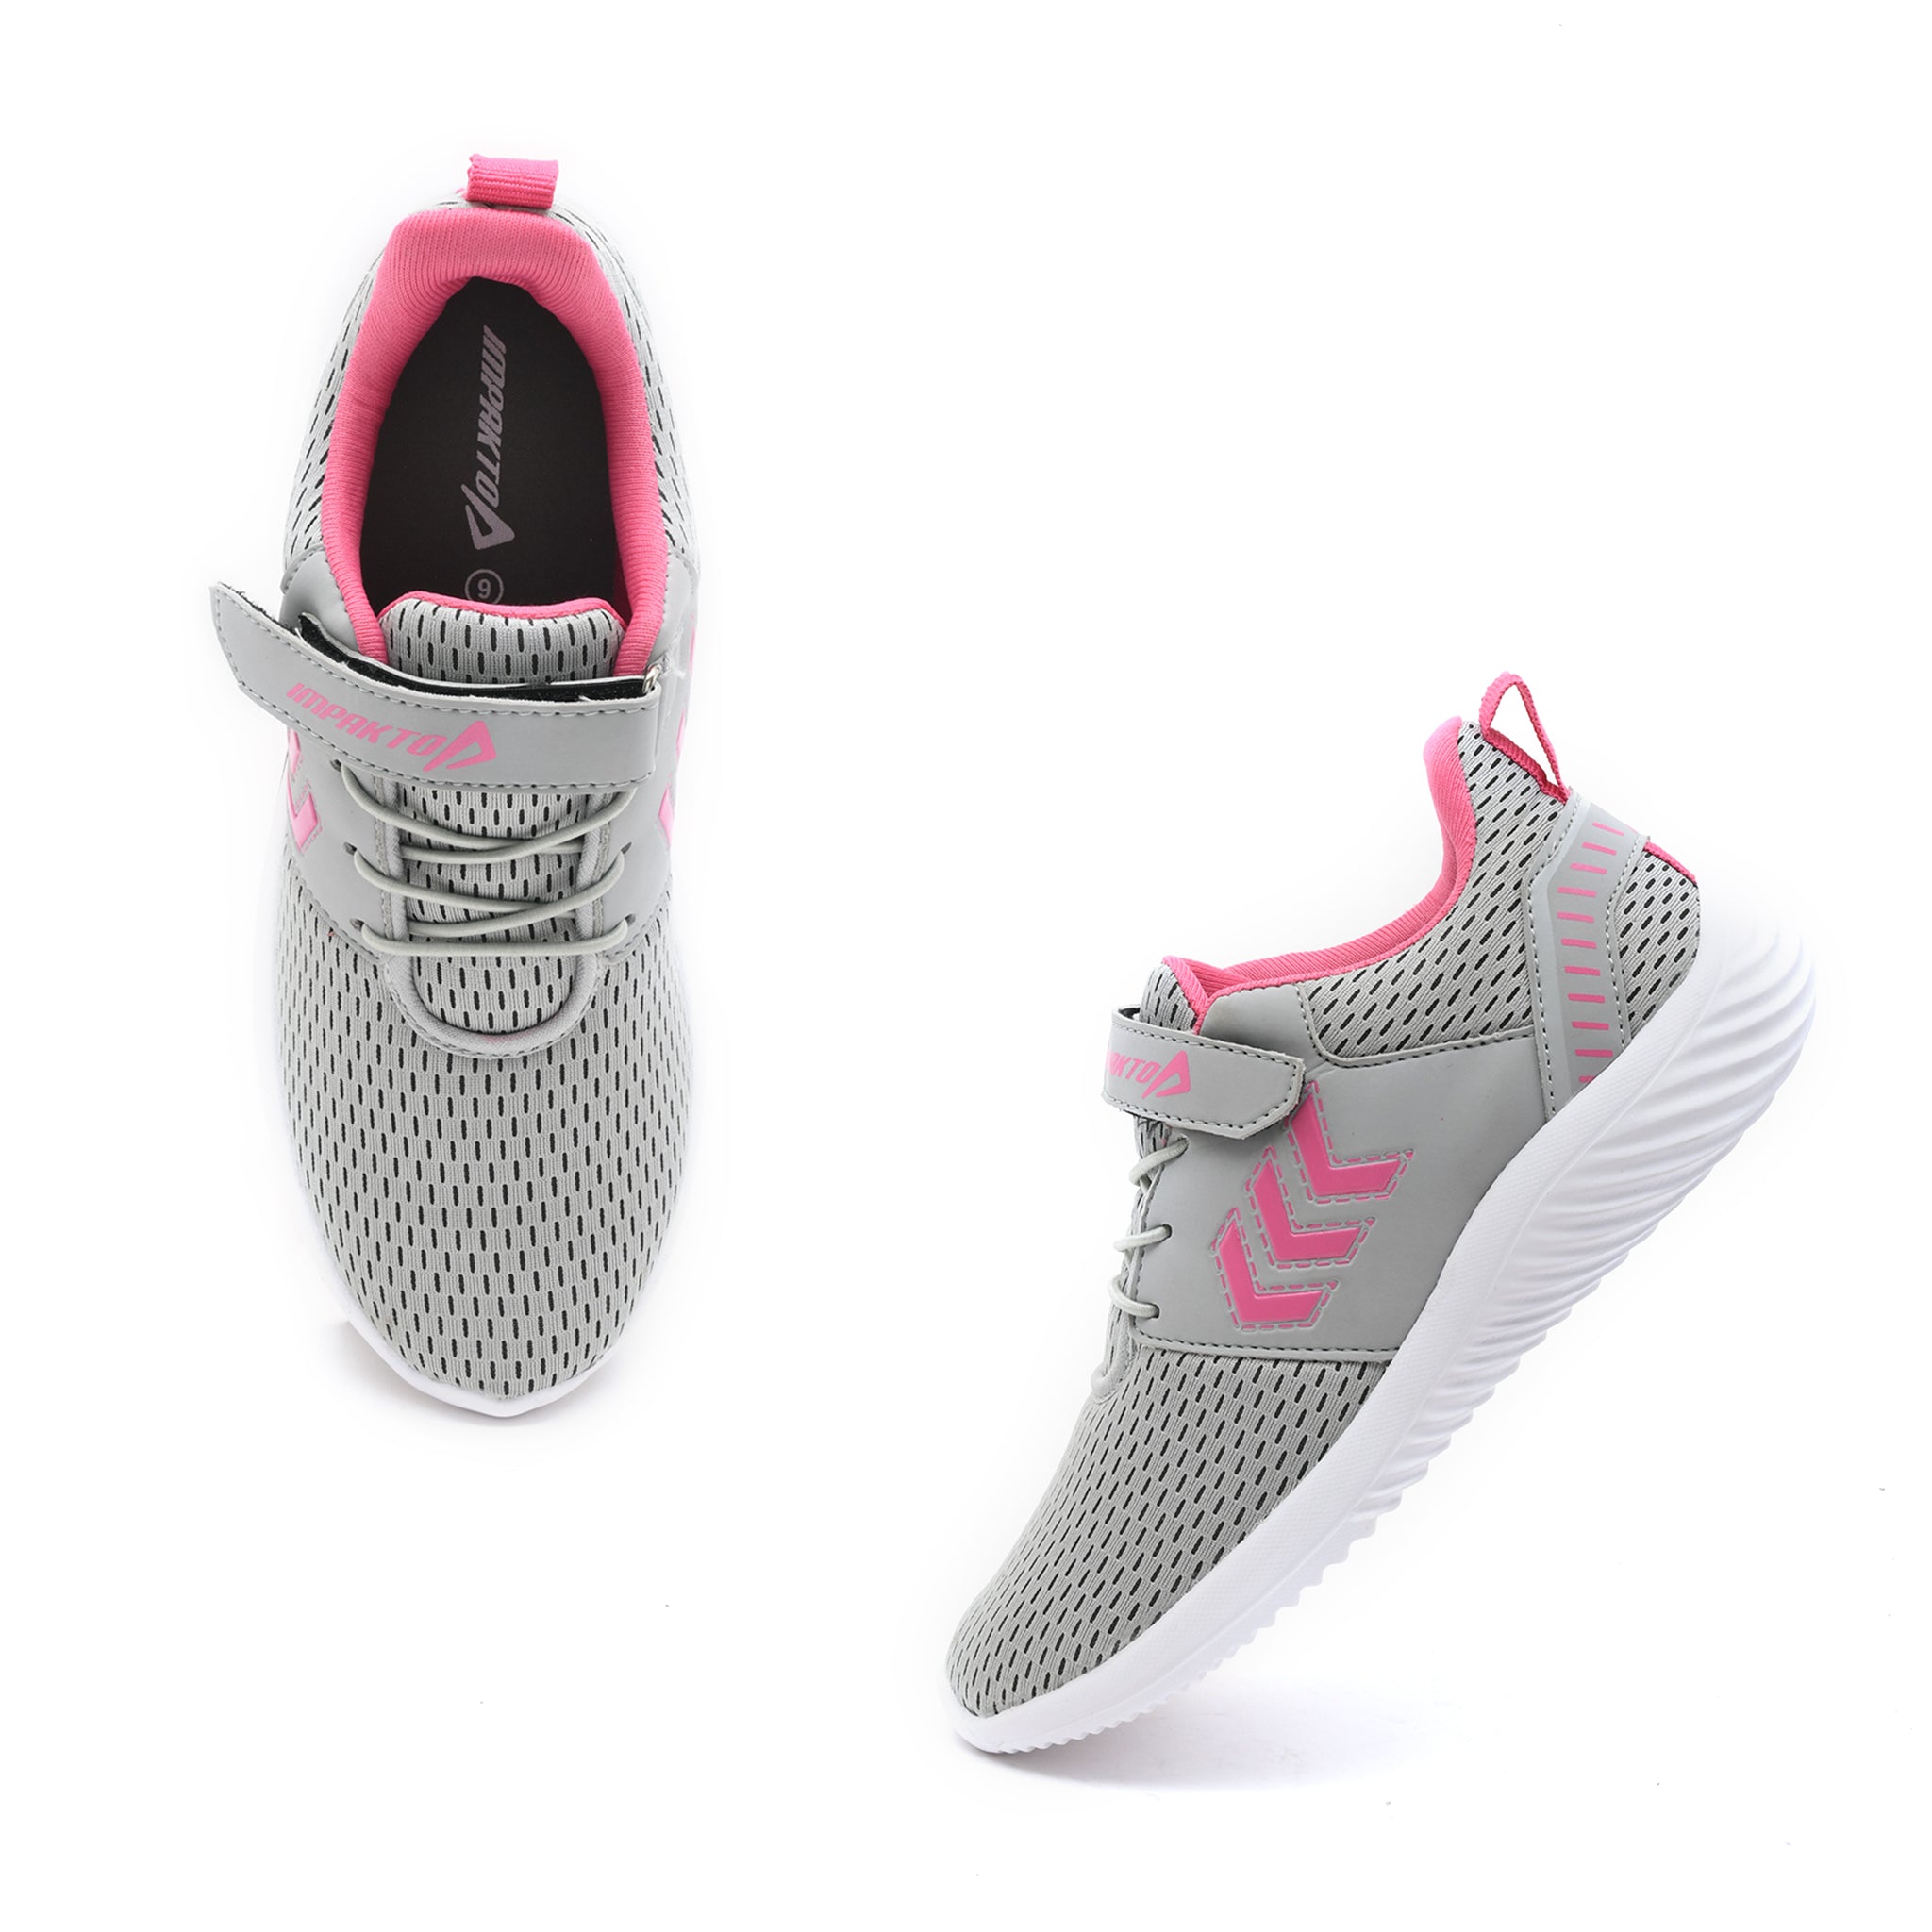 Impakto Celestial Grey Women's Running Shoes